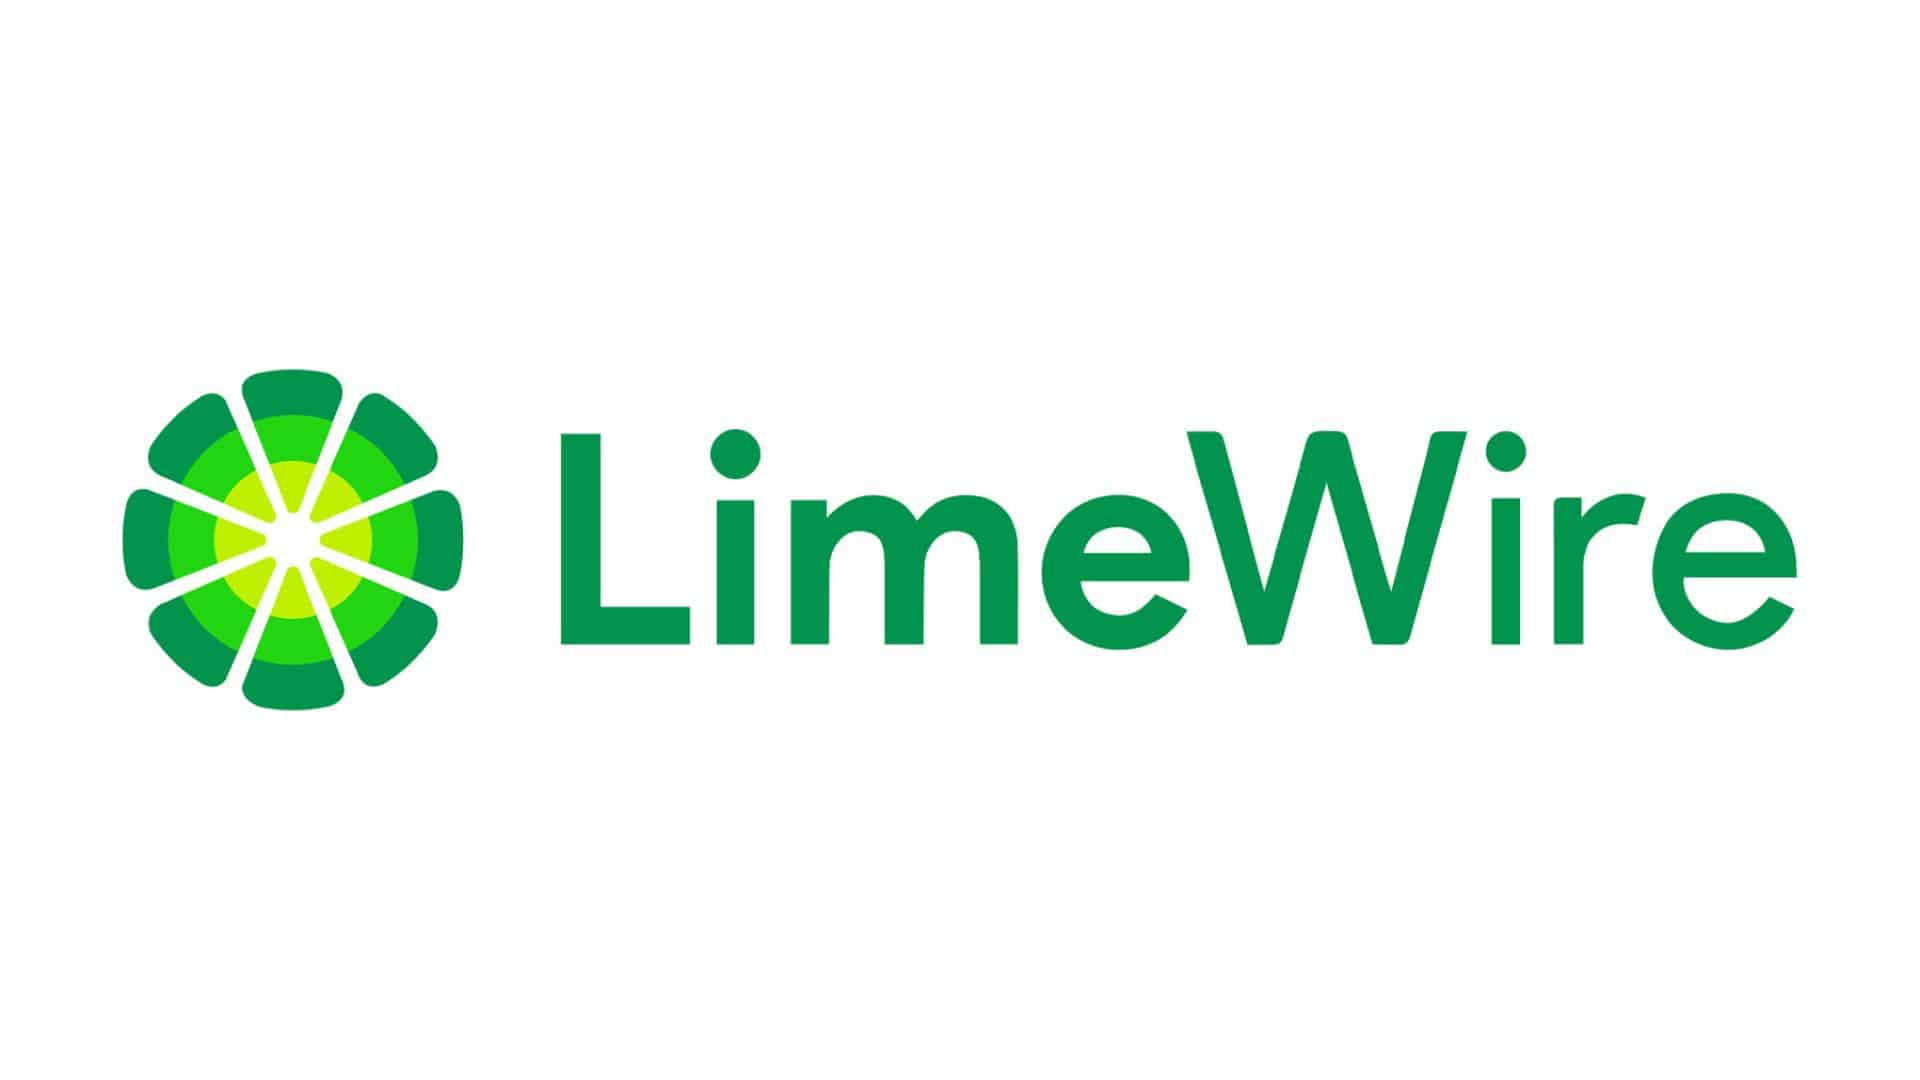 Прогноз цен Limewire: LMWR вырастет на 17%, чтобы предотвратить крах криптовалют, поскольку новое ICO Pepe Unchained становится параболическим